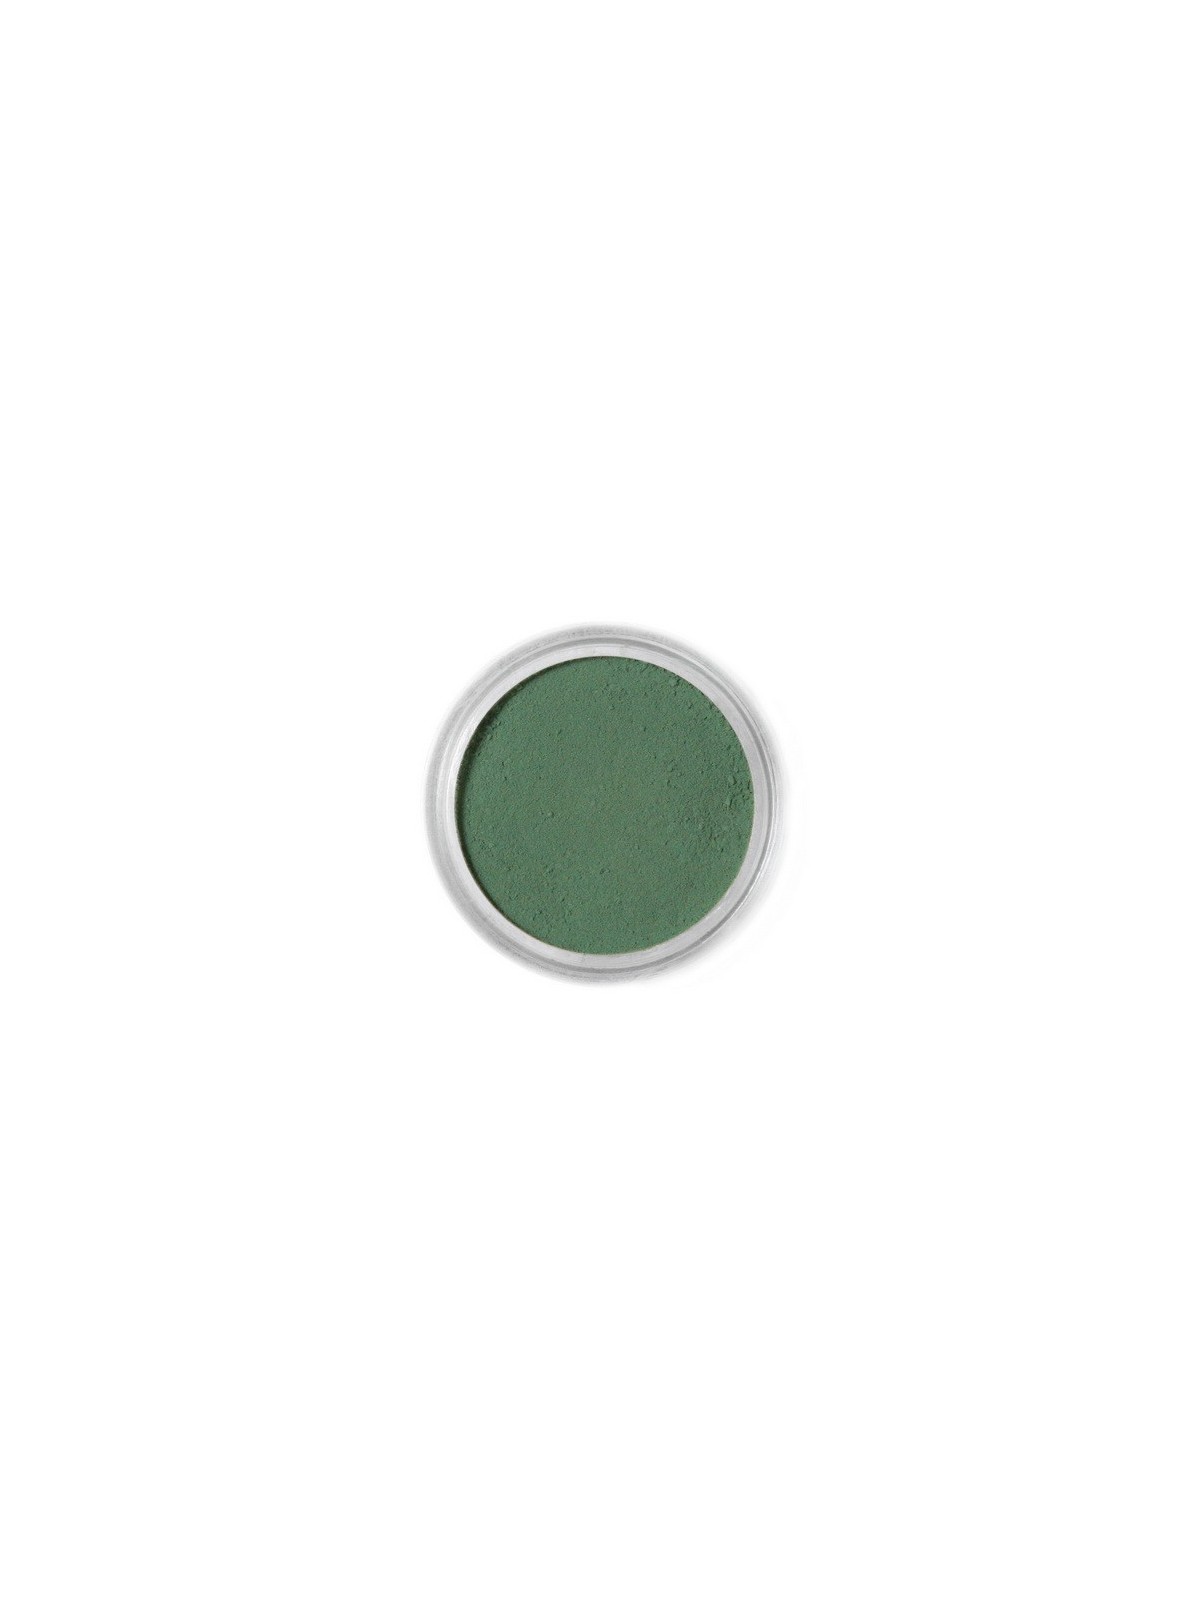 Jedlá prachová farba Fractal - Grass Green, Füzöld (1,5 g)